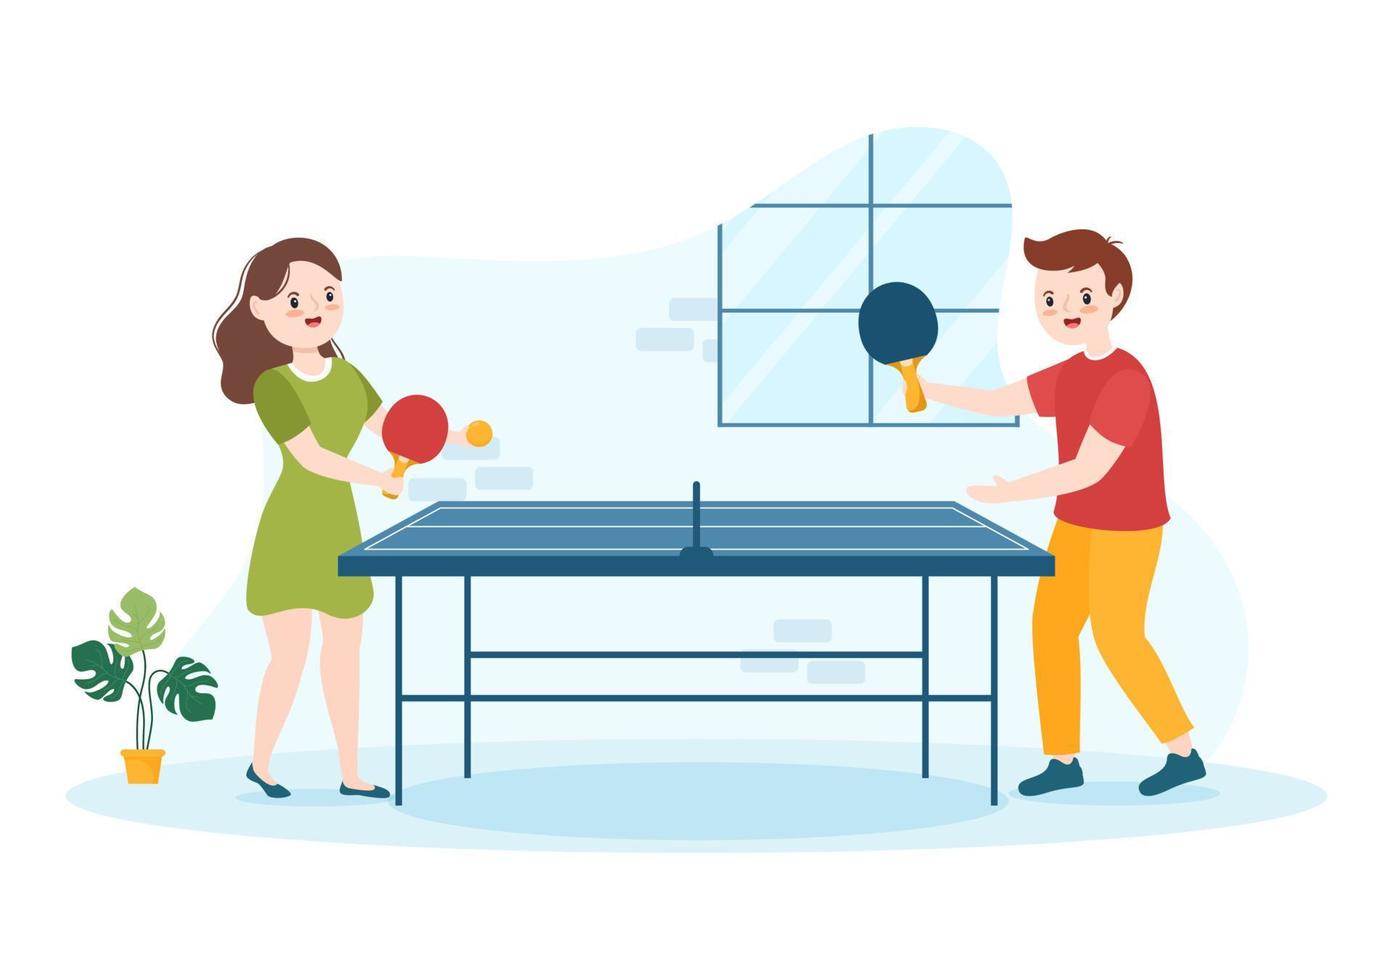 gente jugando deportes de tenis de mesa con raqueta y pelota de juego de ping pong en dibujos animados planos dibujados a mano ilustración de plantillas vector